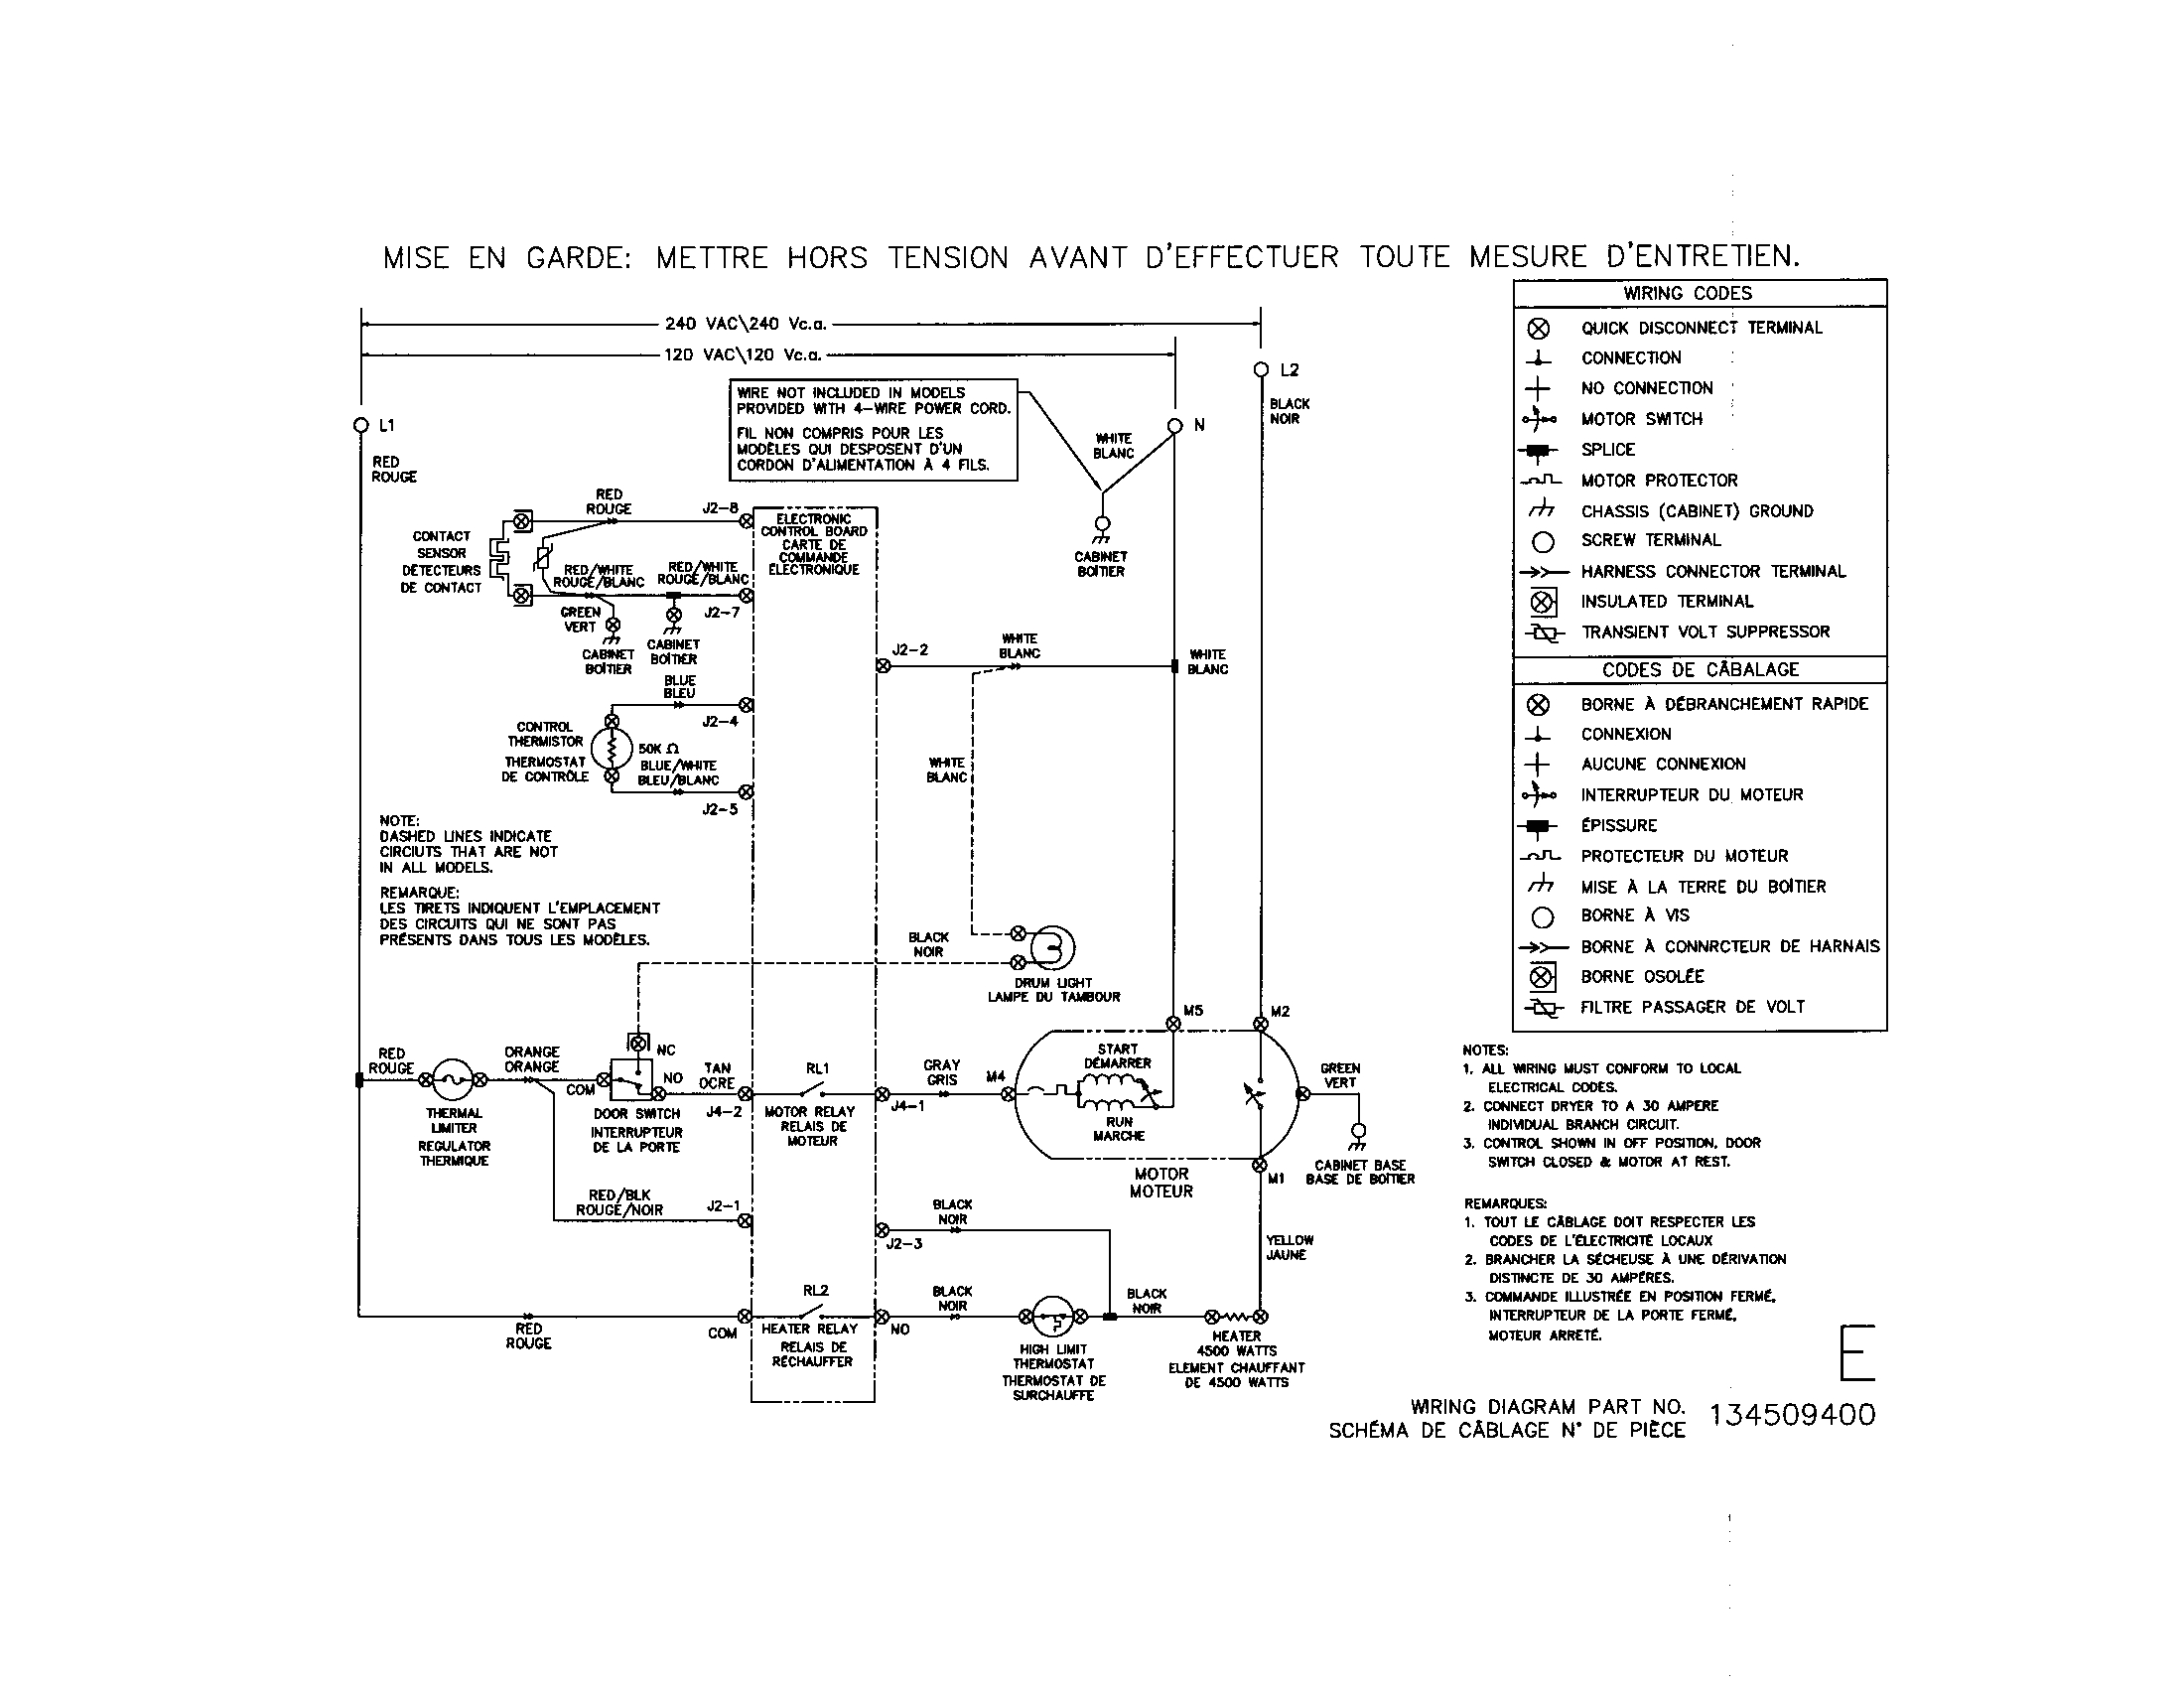 dryer wiring schematic wiring diagram go electric